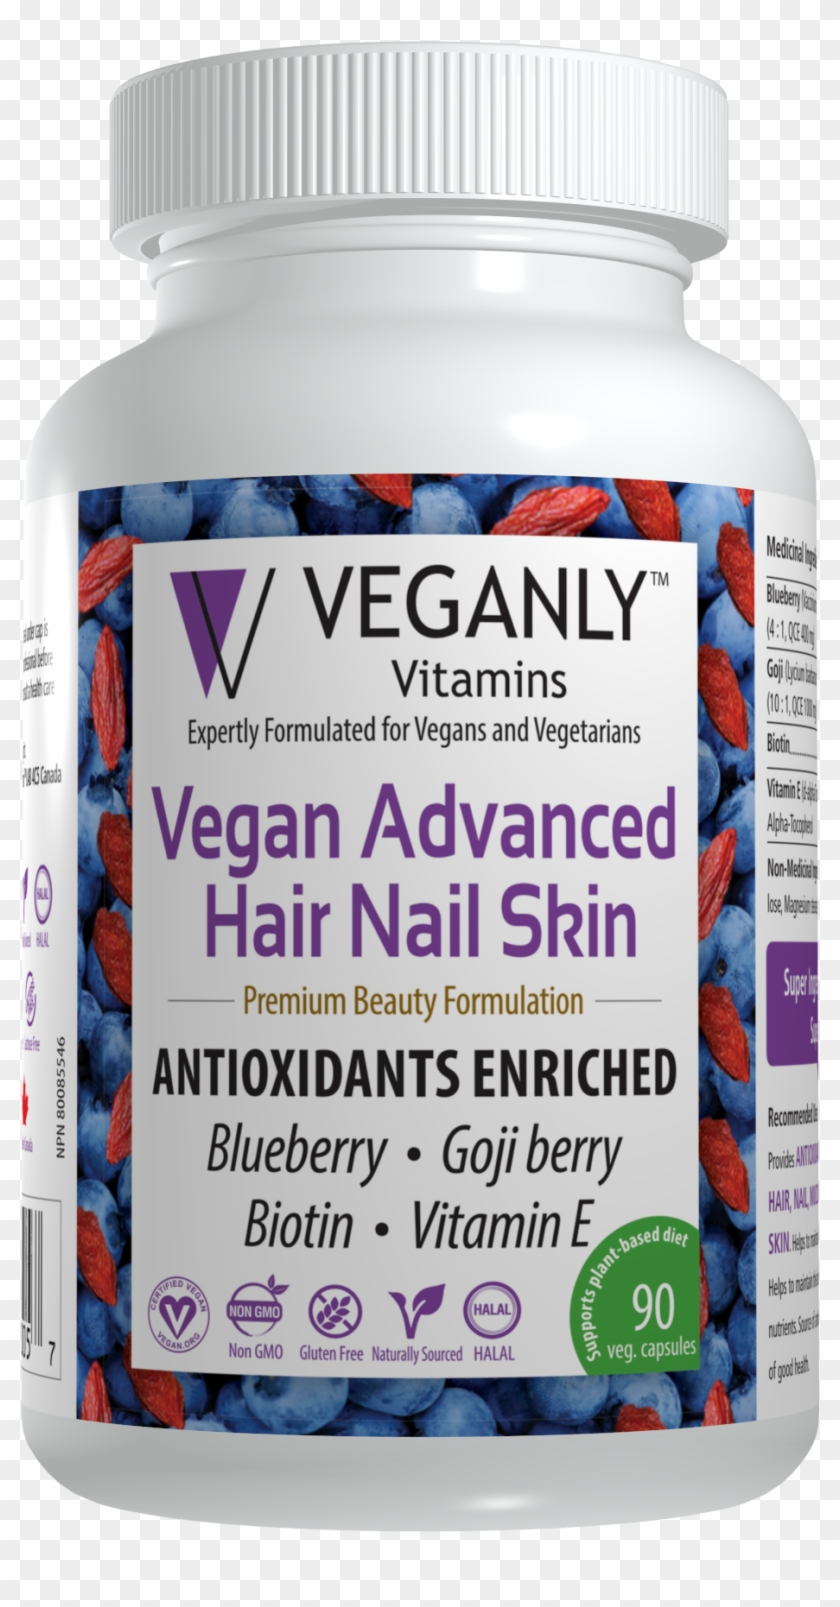 Hns 90 - Veganly Vitamins Vegan Advanced Hair Nail Skin Clipart #2808404